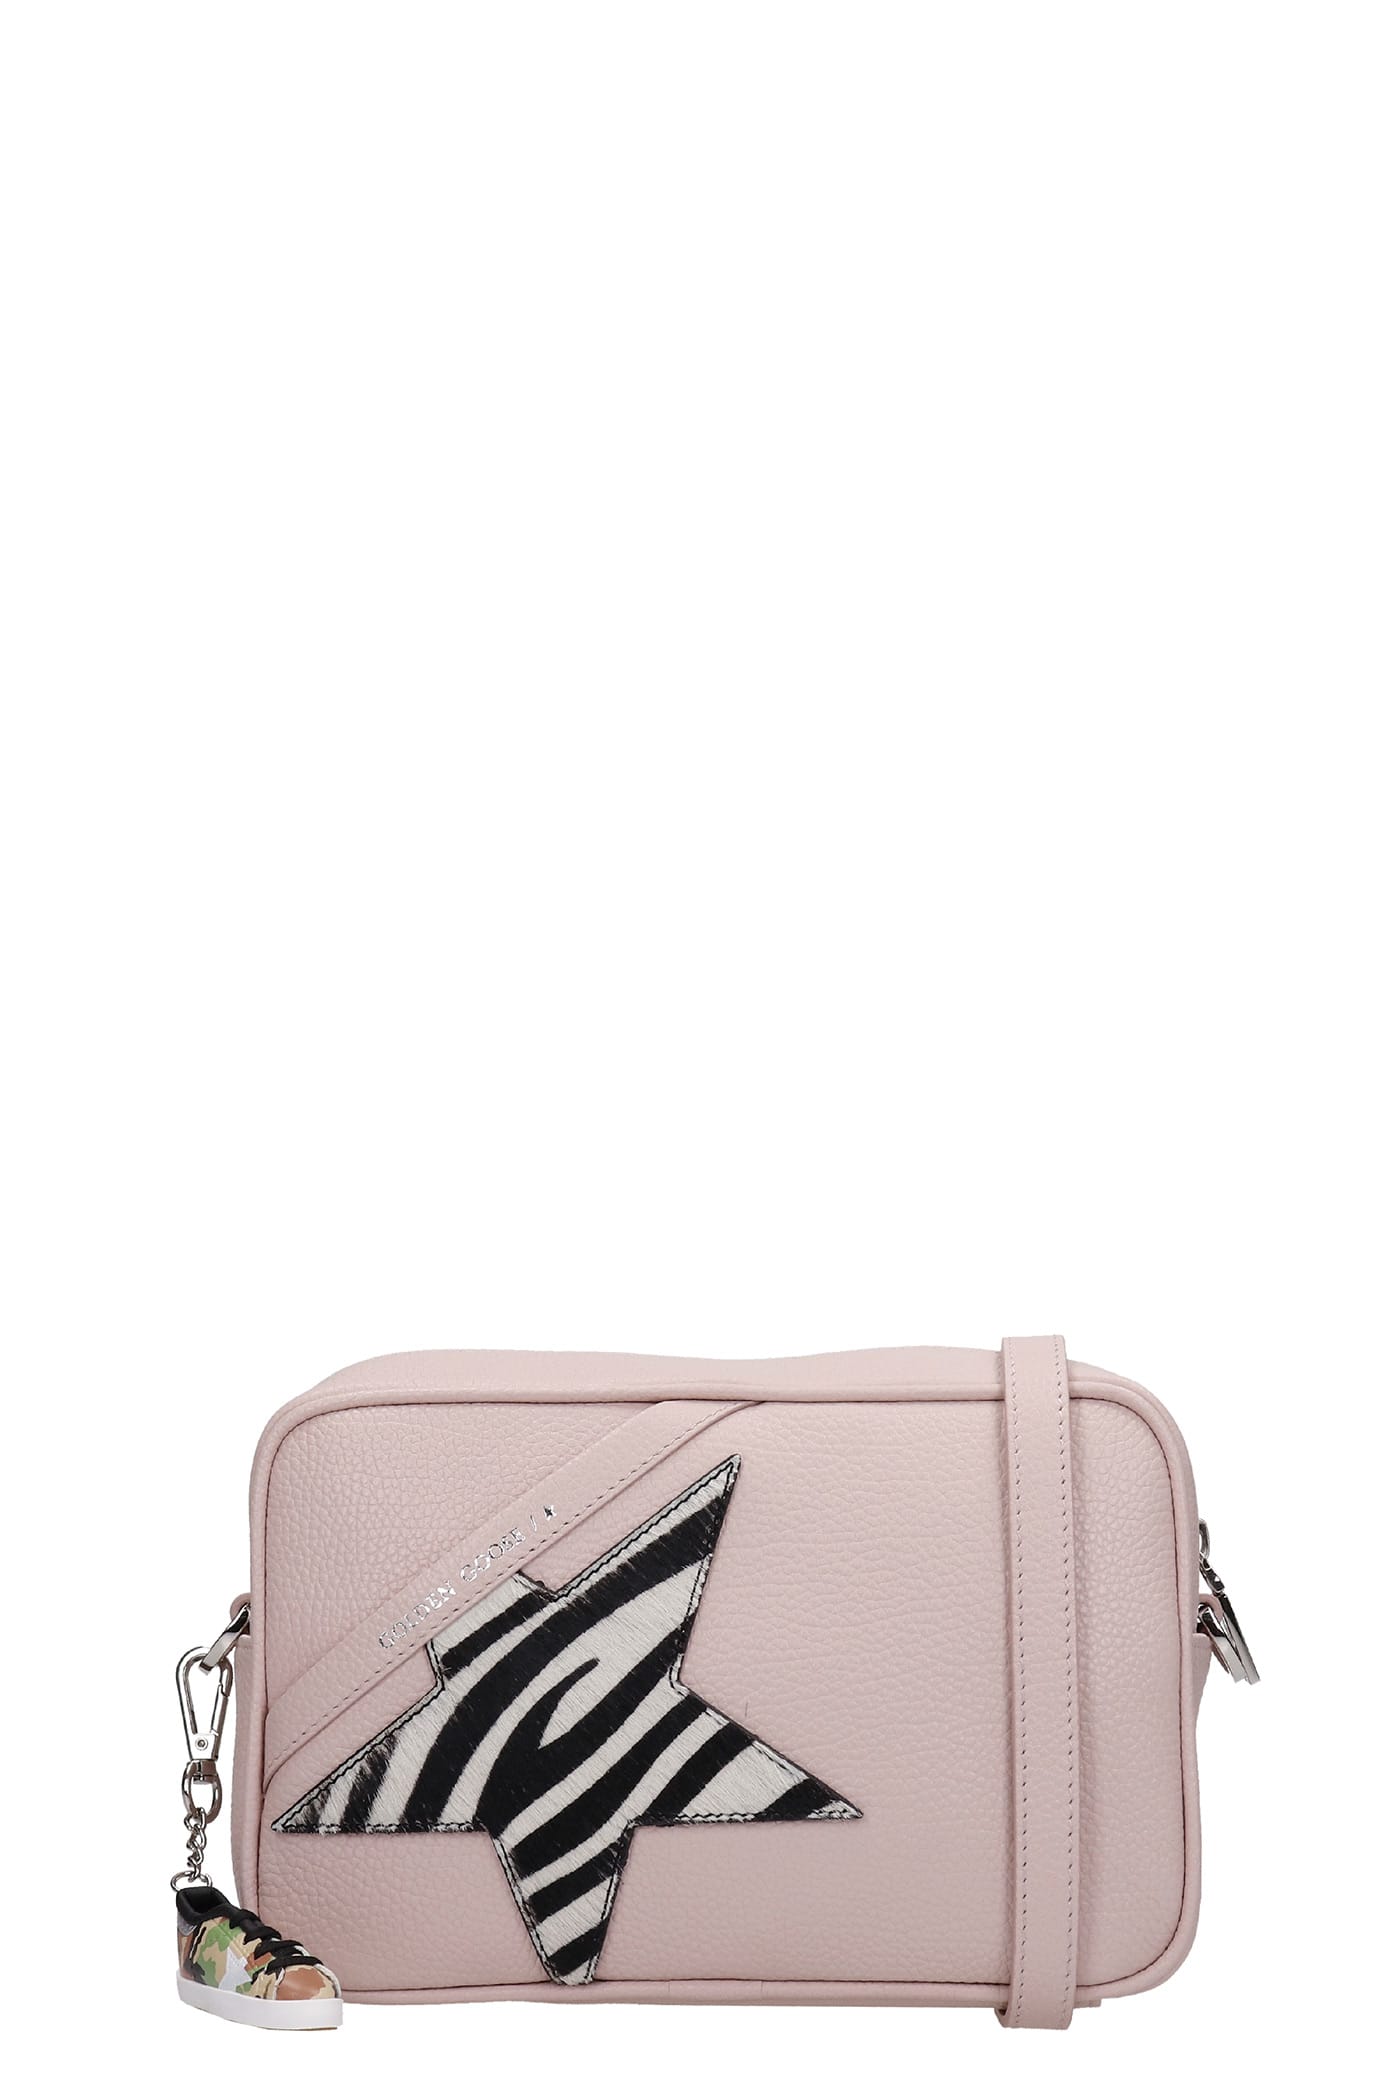 Golden Goose Star Bag Shoulder Bag In Rose-pink Leather